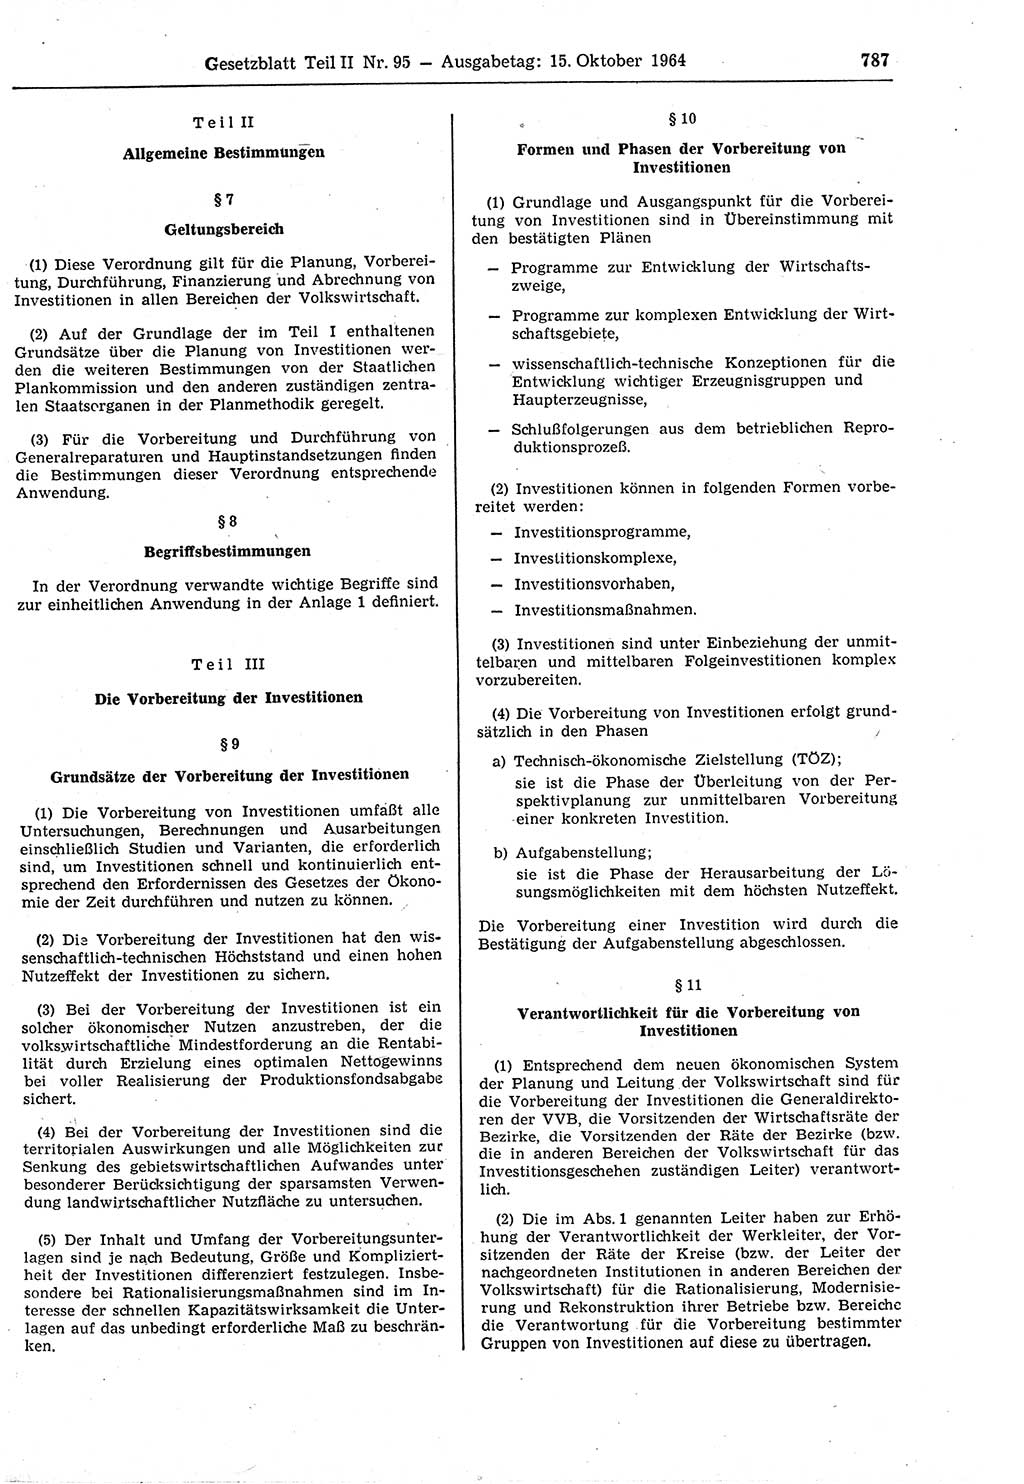 Gesetzblatt (GBl.) der Deutschen Demokratischen Republik (DDR) Teil ⅠⅠ 1964, Seite 787 (GBl. DDR ⅠⅠ 1964, S. 787)